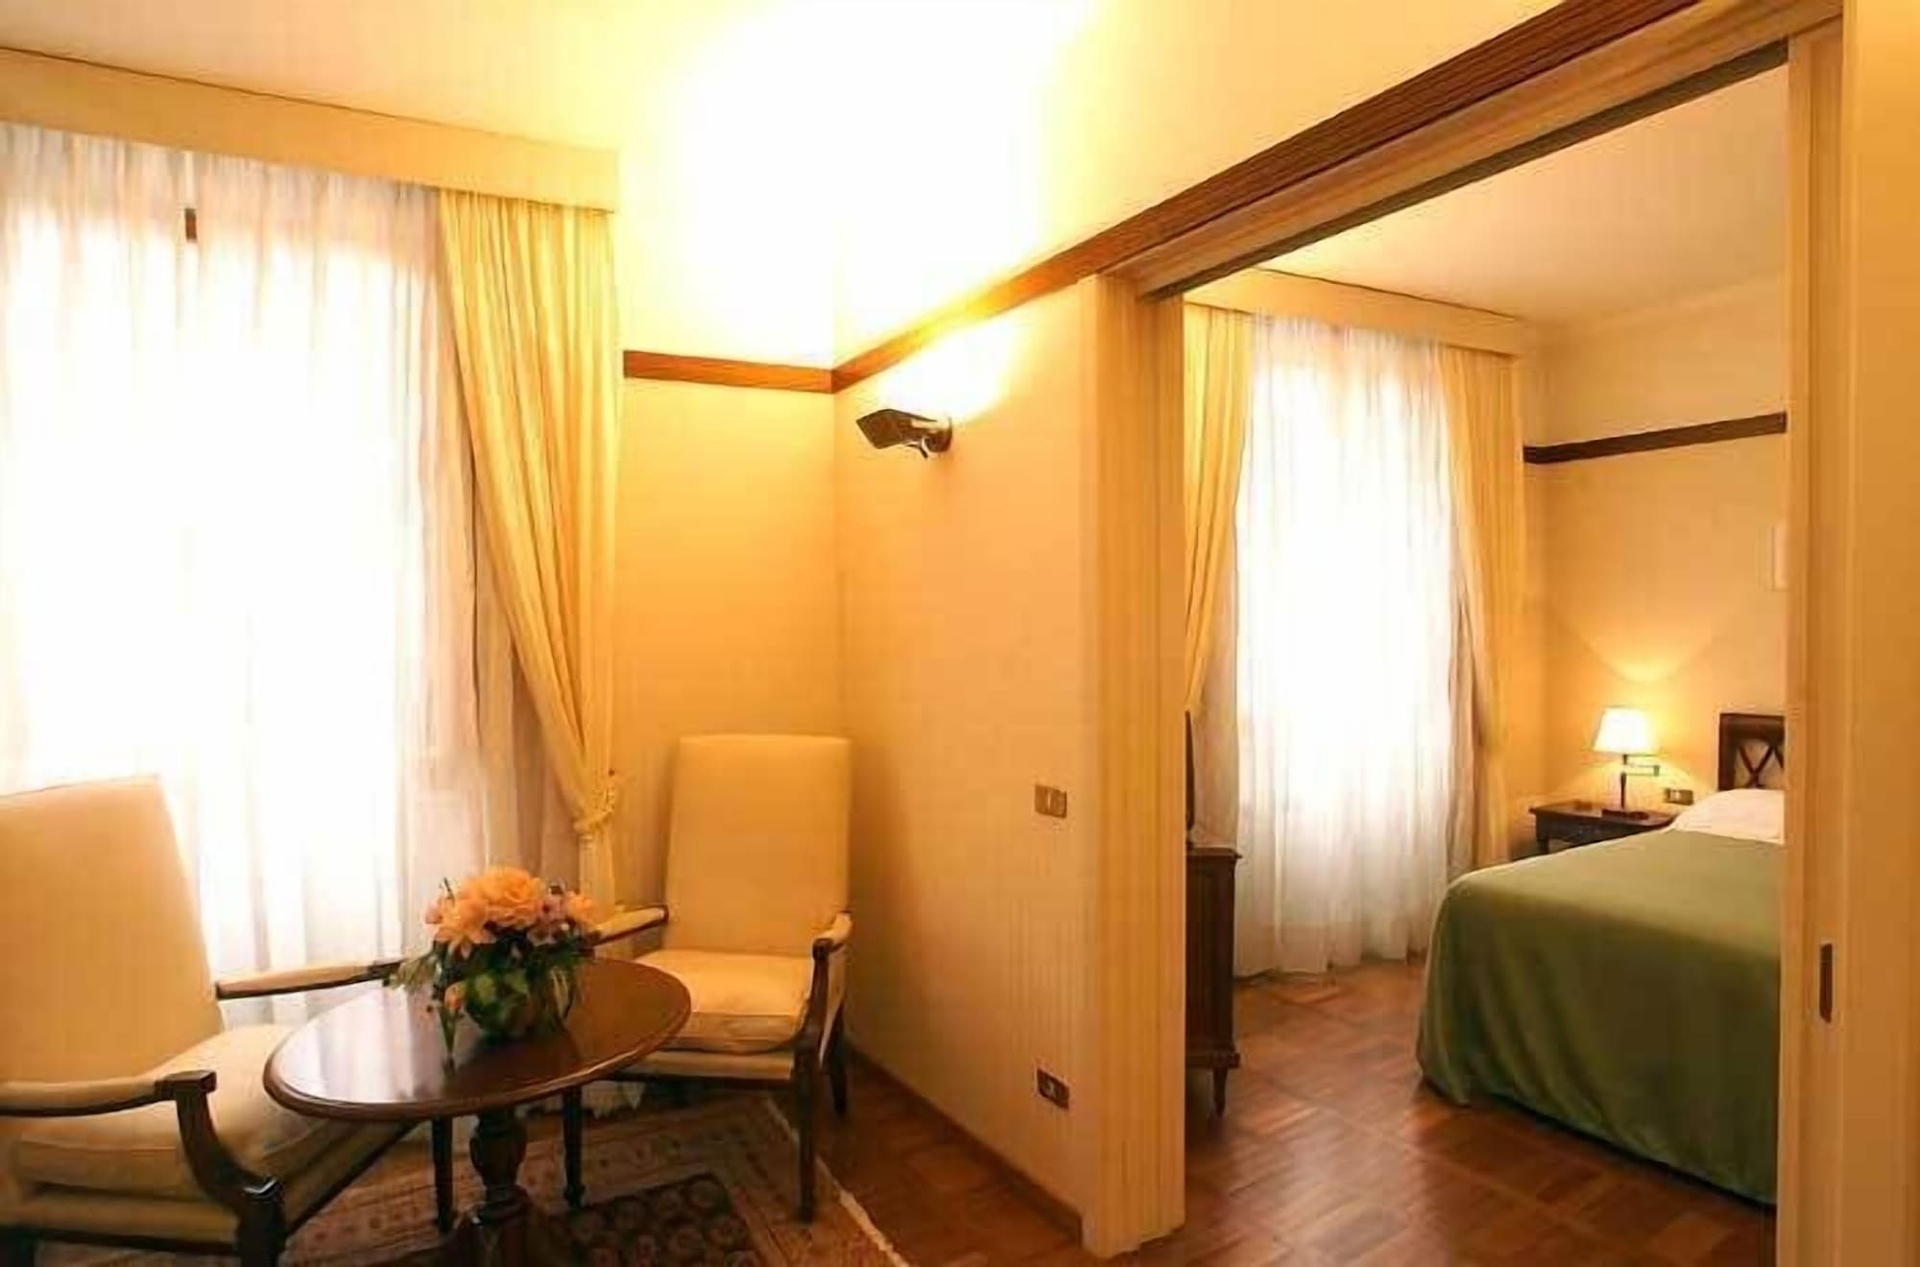 Bedroom 2, Hotel&Ristorante Miramonti Palazzo Storico, Rieti